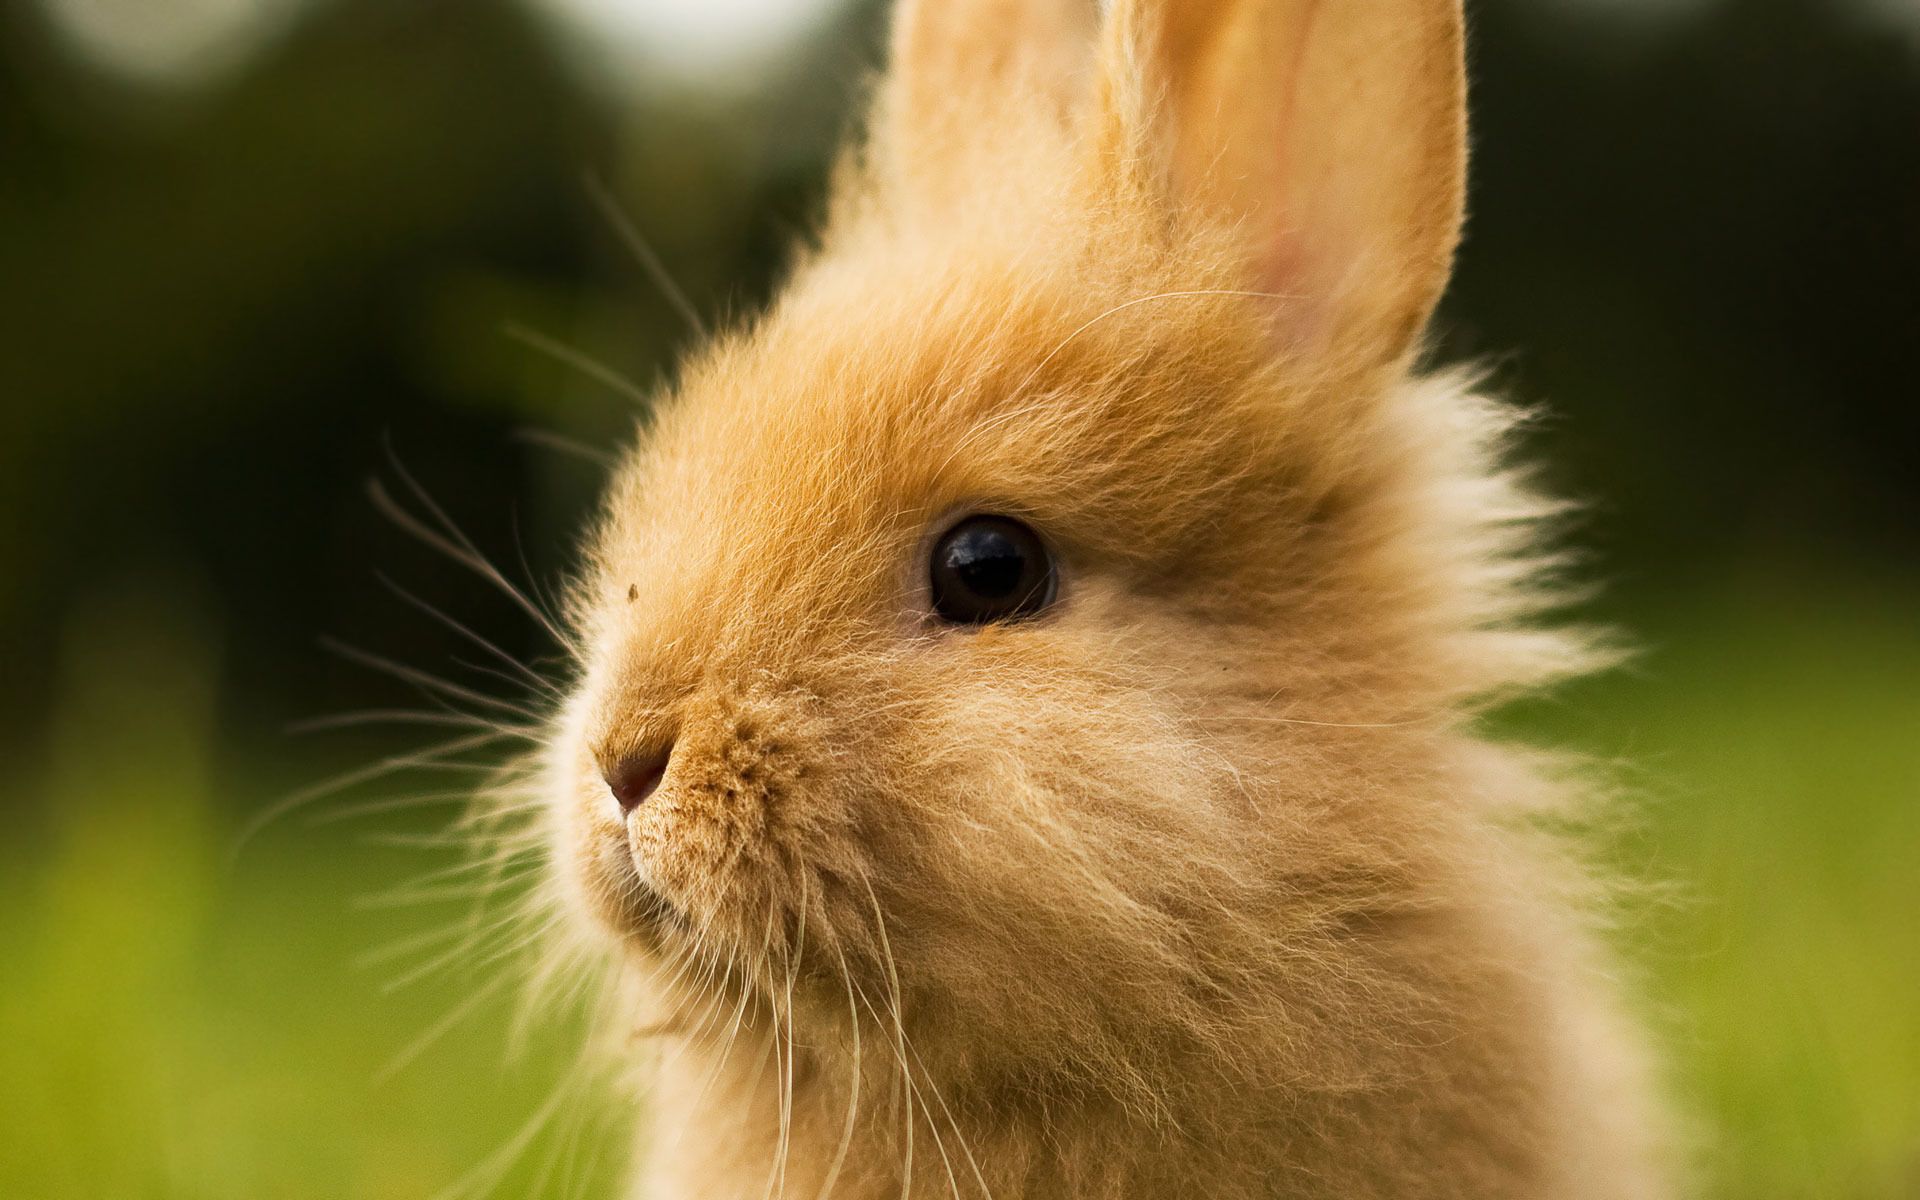 photos of bunny rabbits